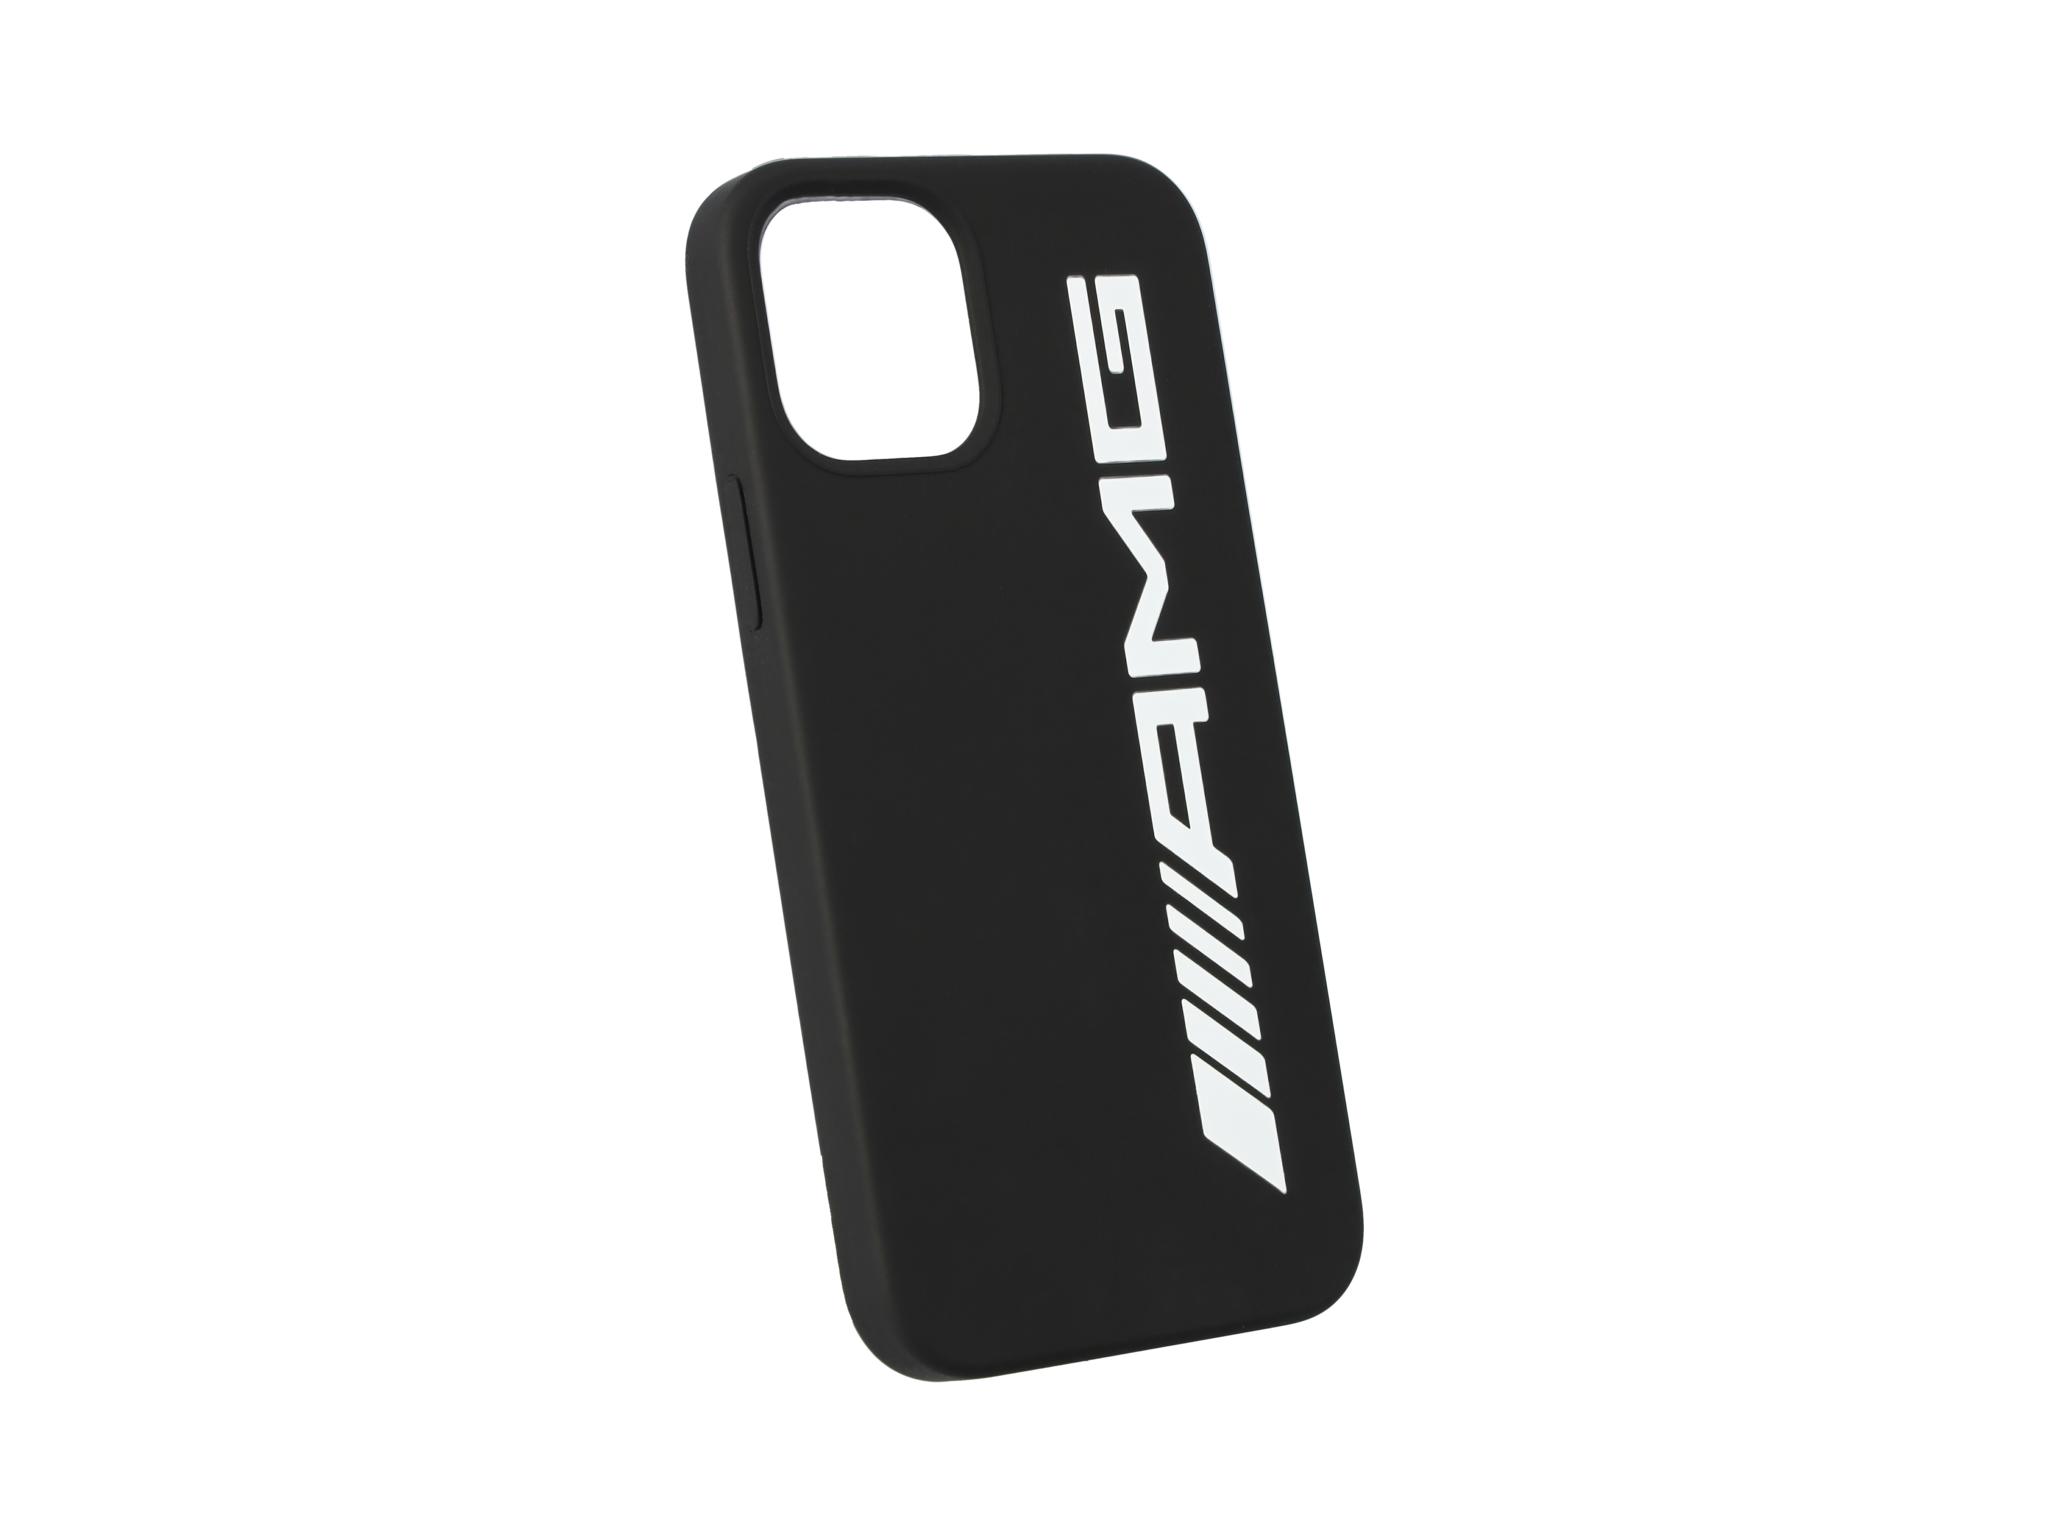 AMG Hülle für iPhone® 12 Pro/iPhone® 12 - schwarz / weiß, Polycarbonat /  Silikon /  Mikrofaser